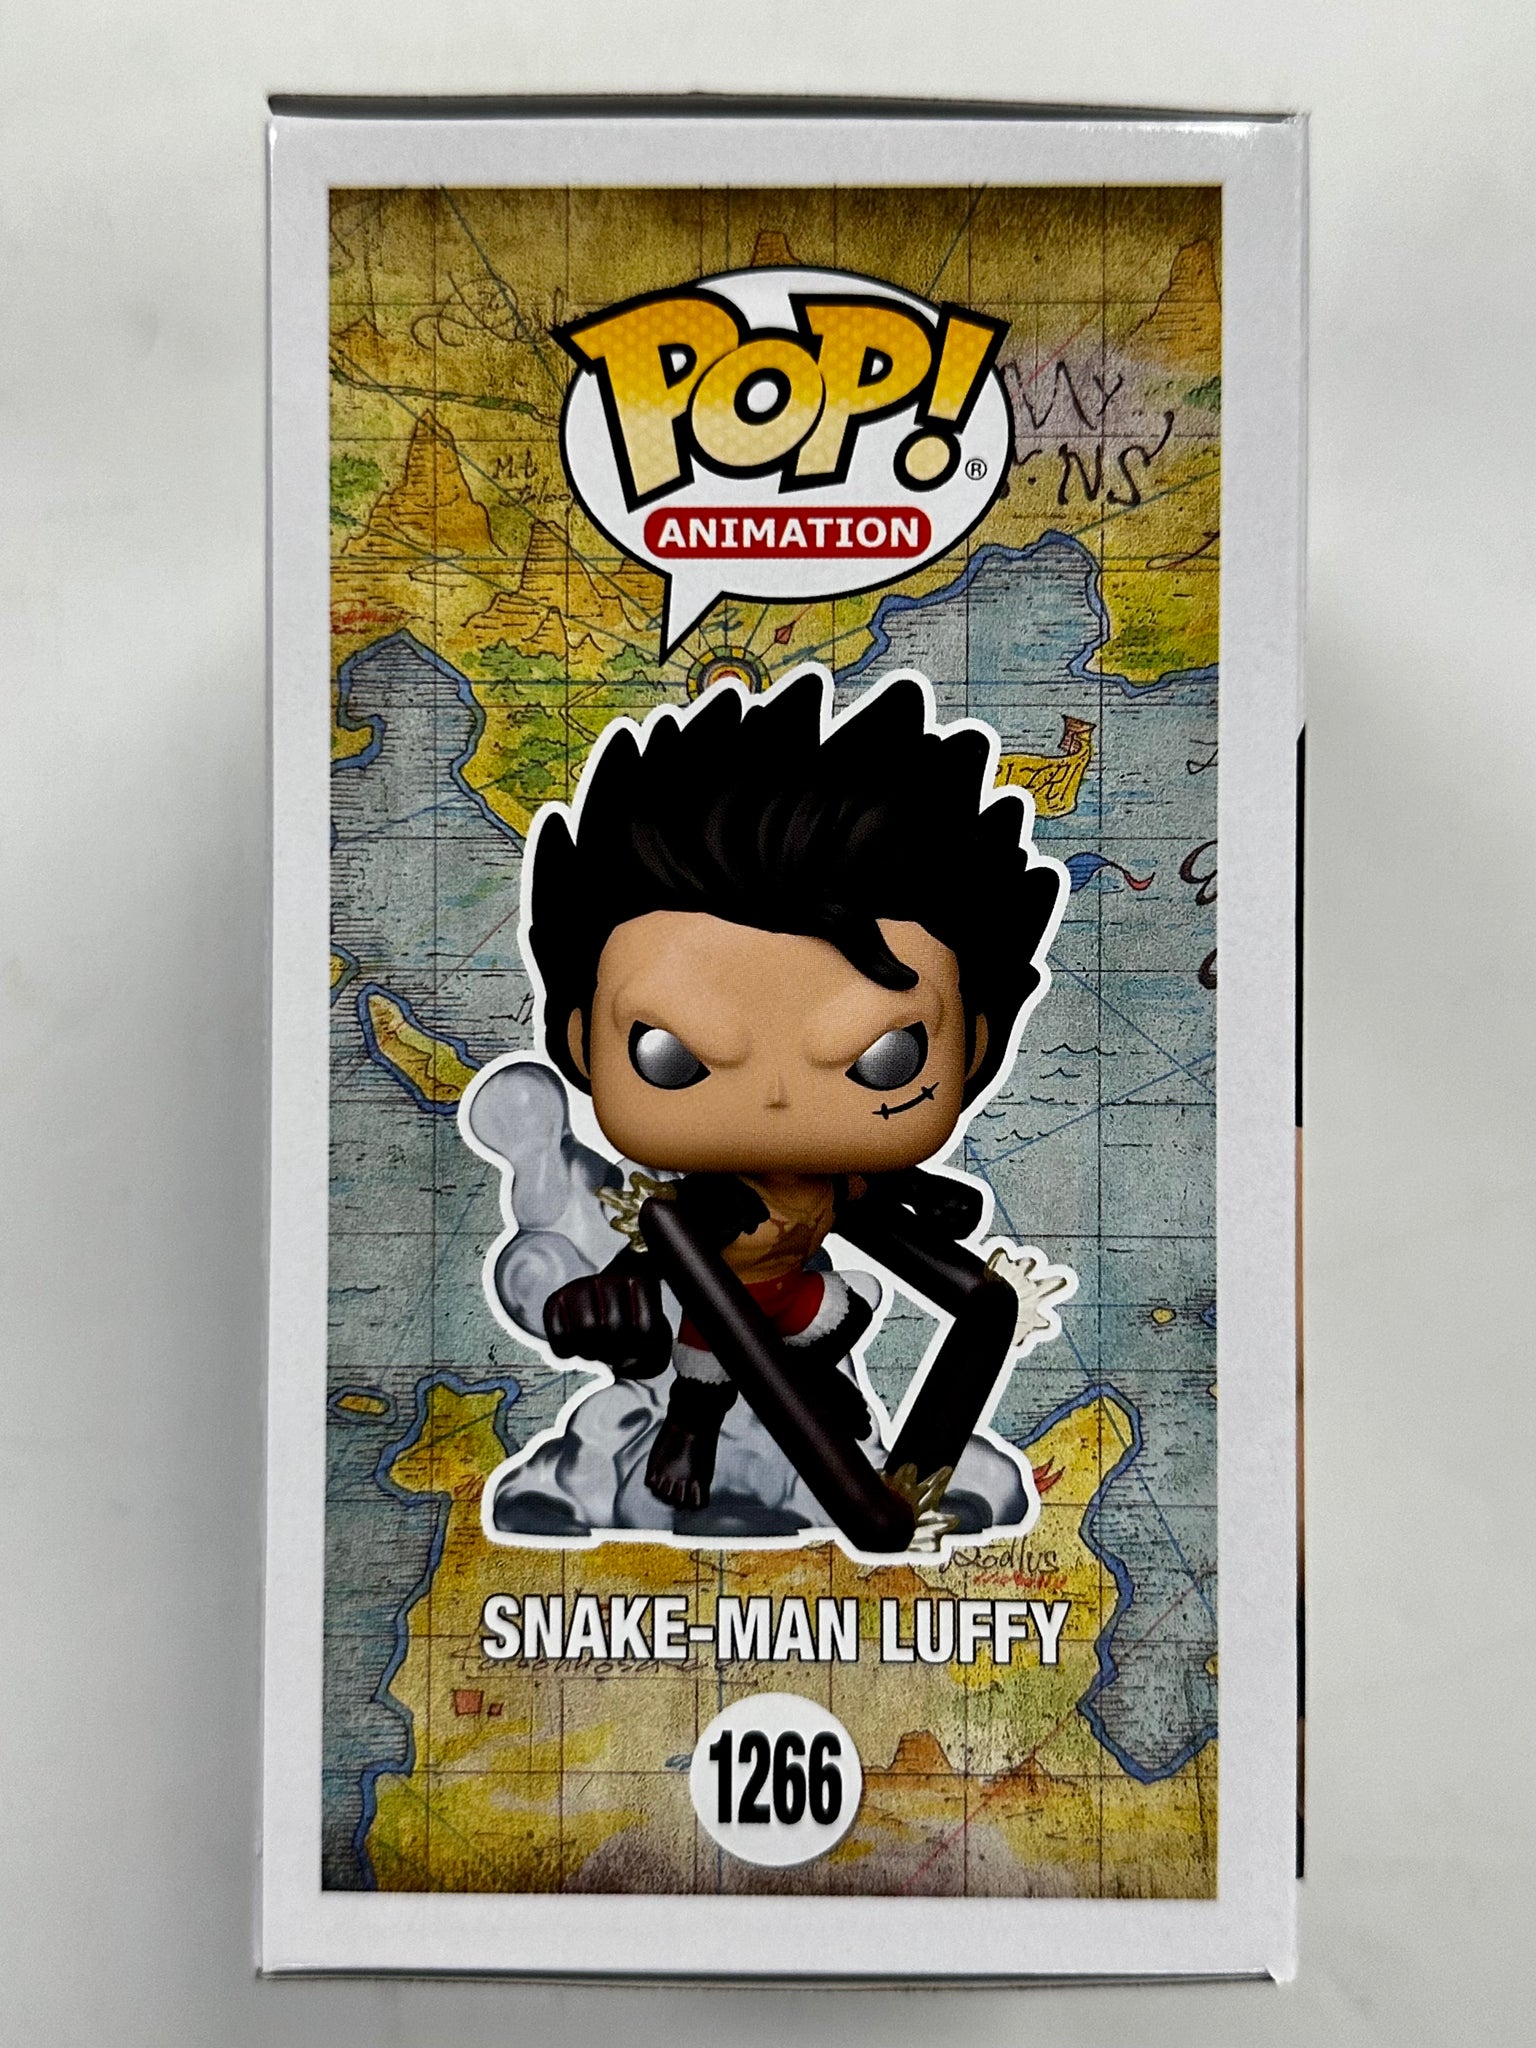 Funko Pop Snake-Man Luffy - 1266 - One Piece // Just One Pop Showcase 